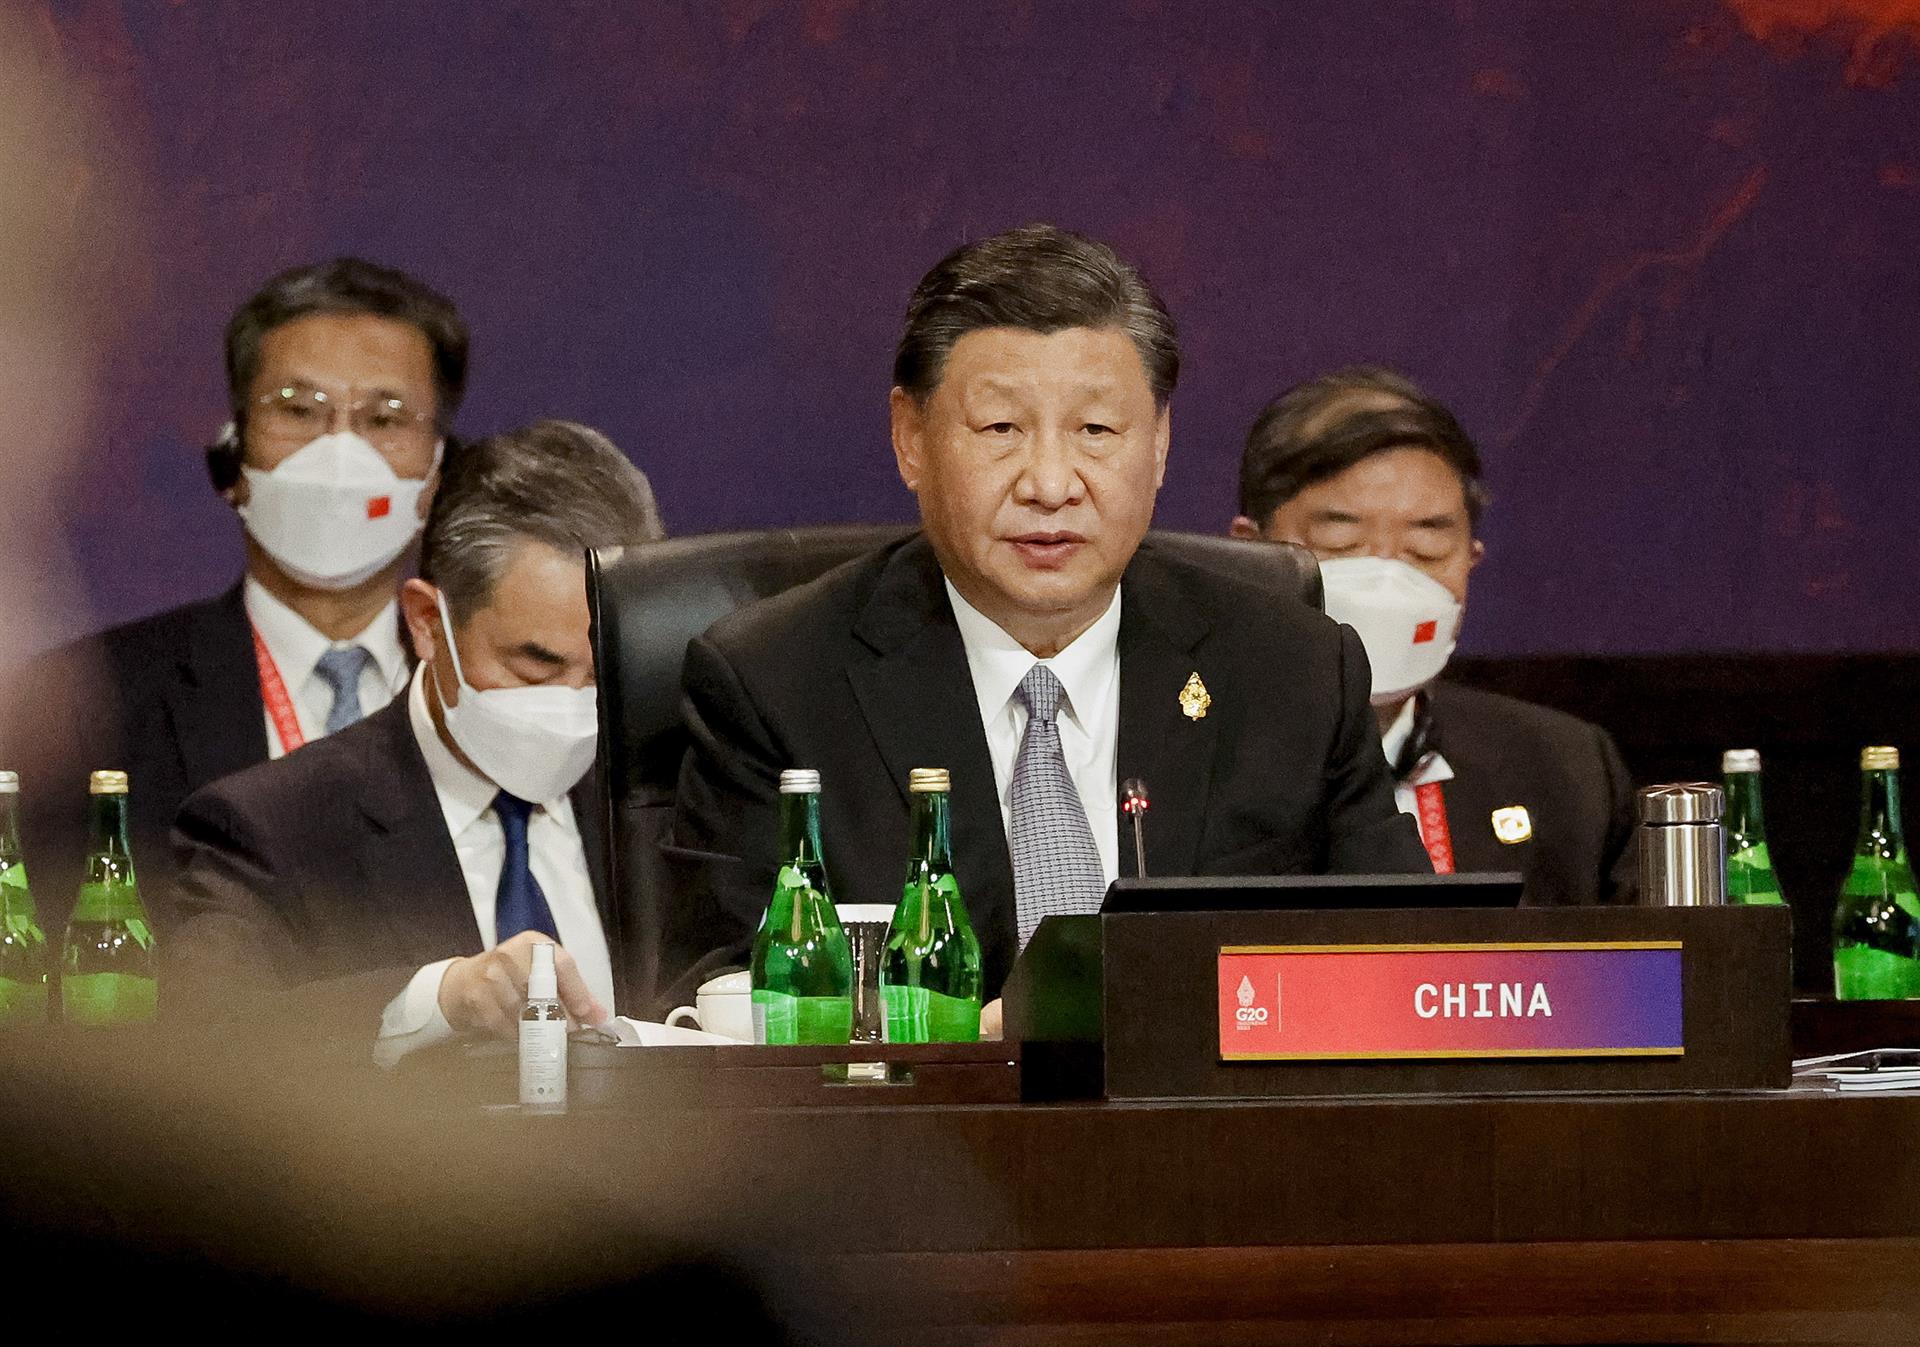 Roce diplomático entre China y Canada por la filtración de una reunión en el G20